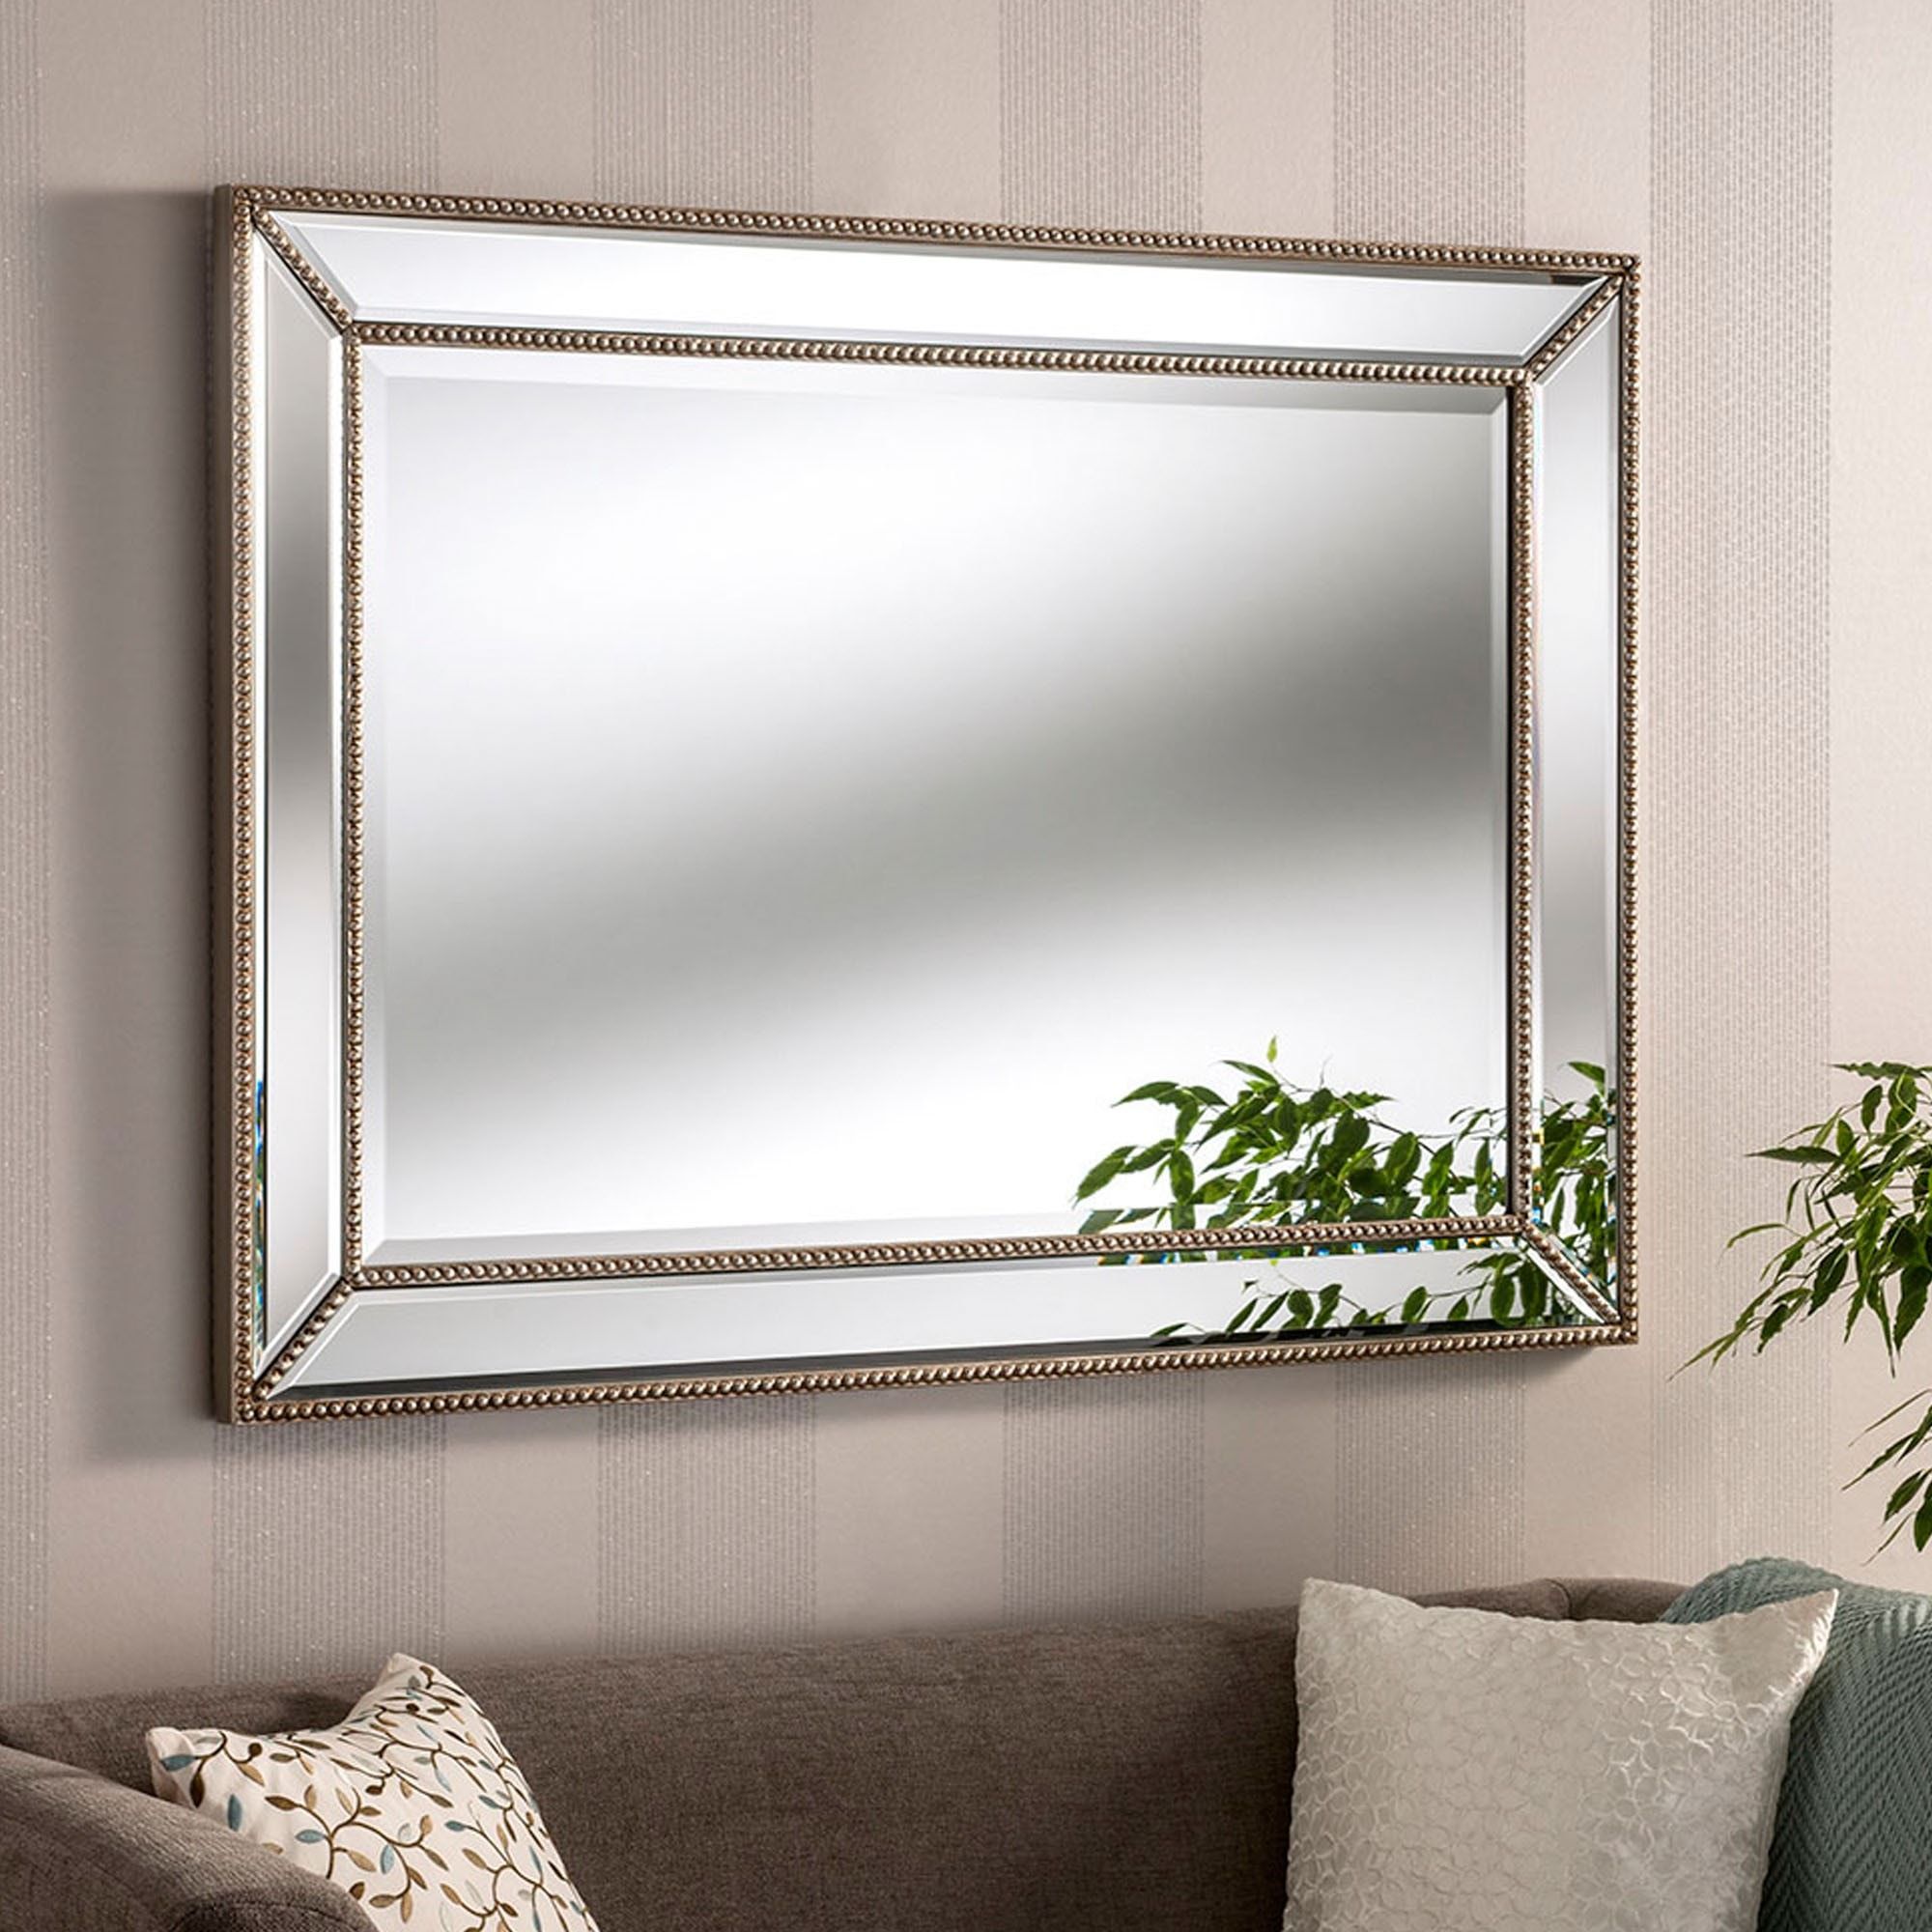 Contemporary Monaco Silver Wall Mirror | Contemporary Wall Mirrors Throughout Silver High Wall Mirrors (View 2 of 15)